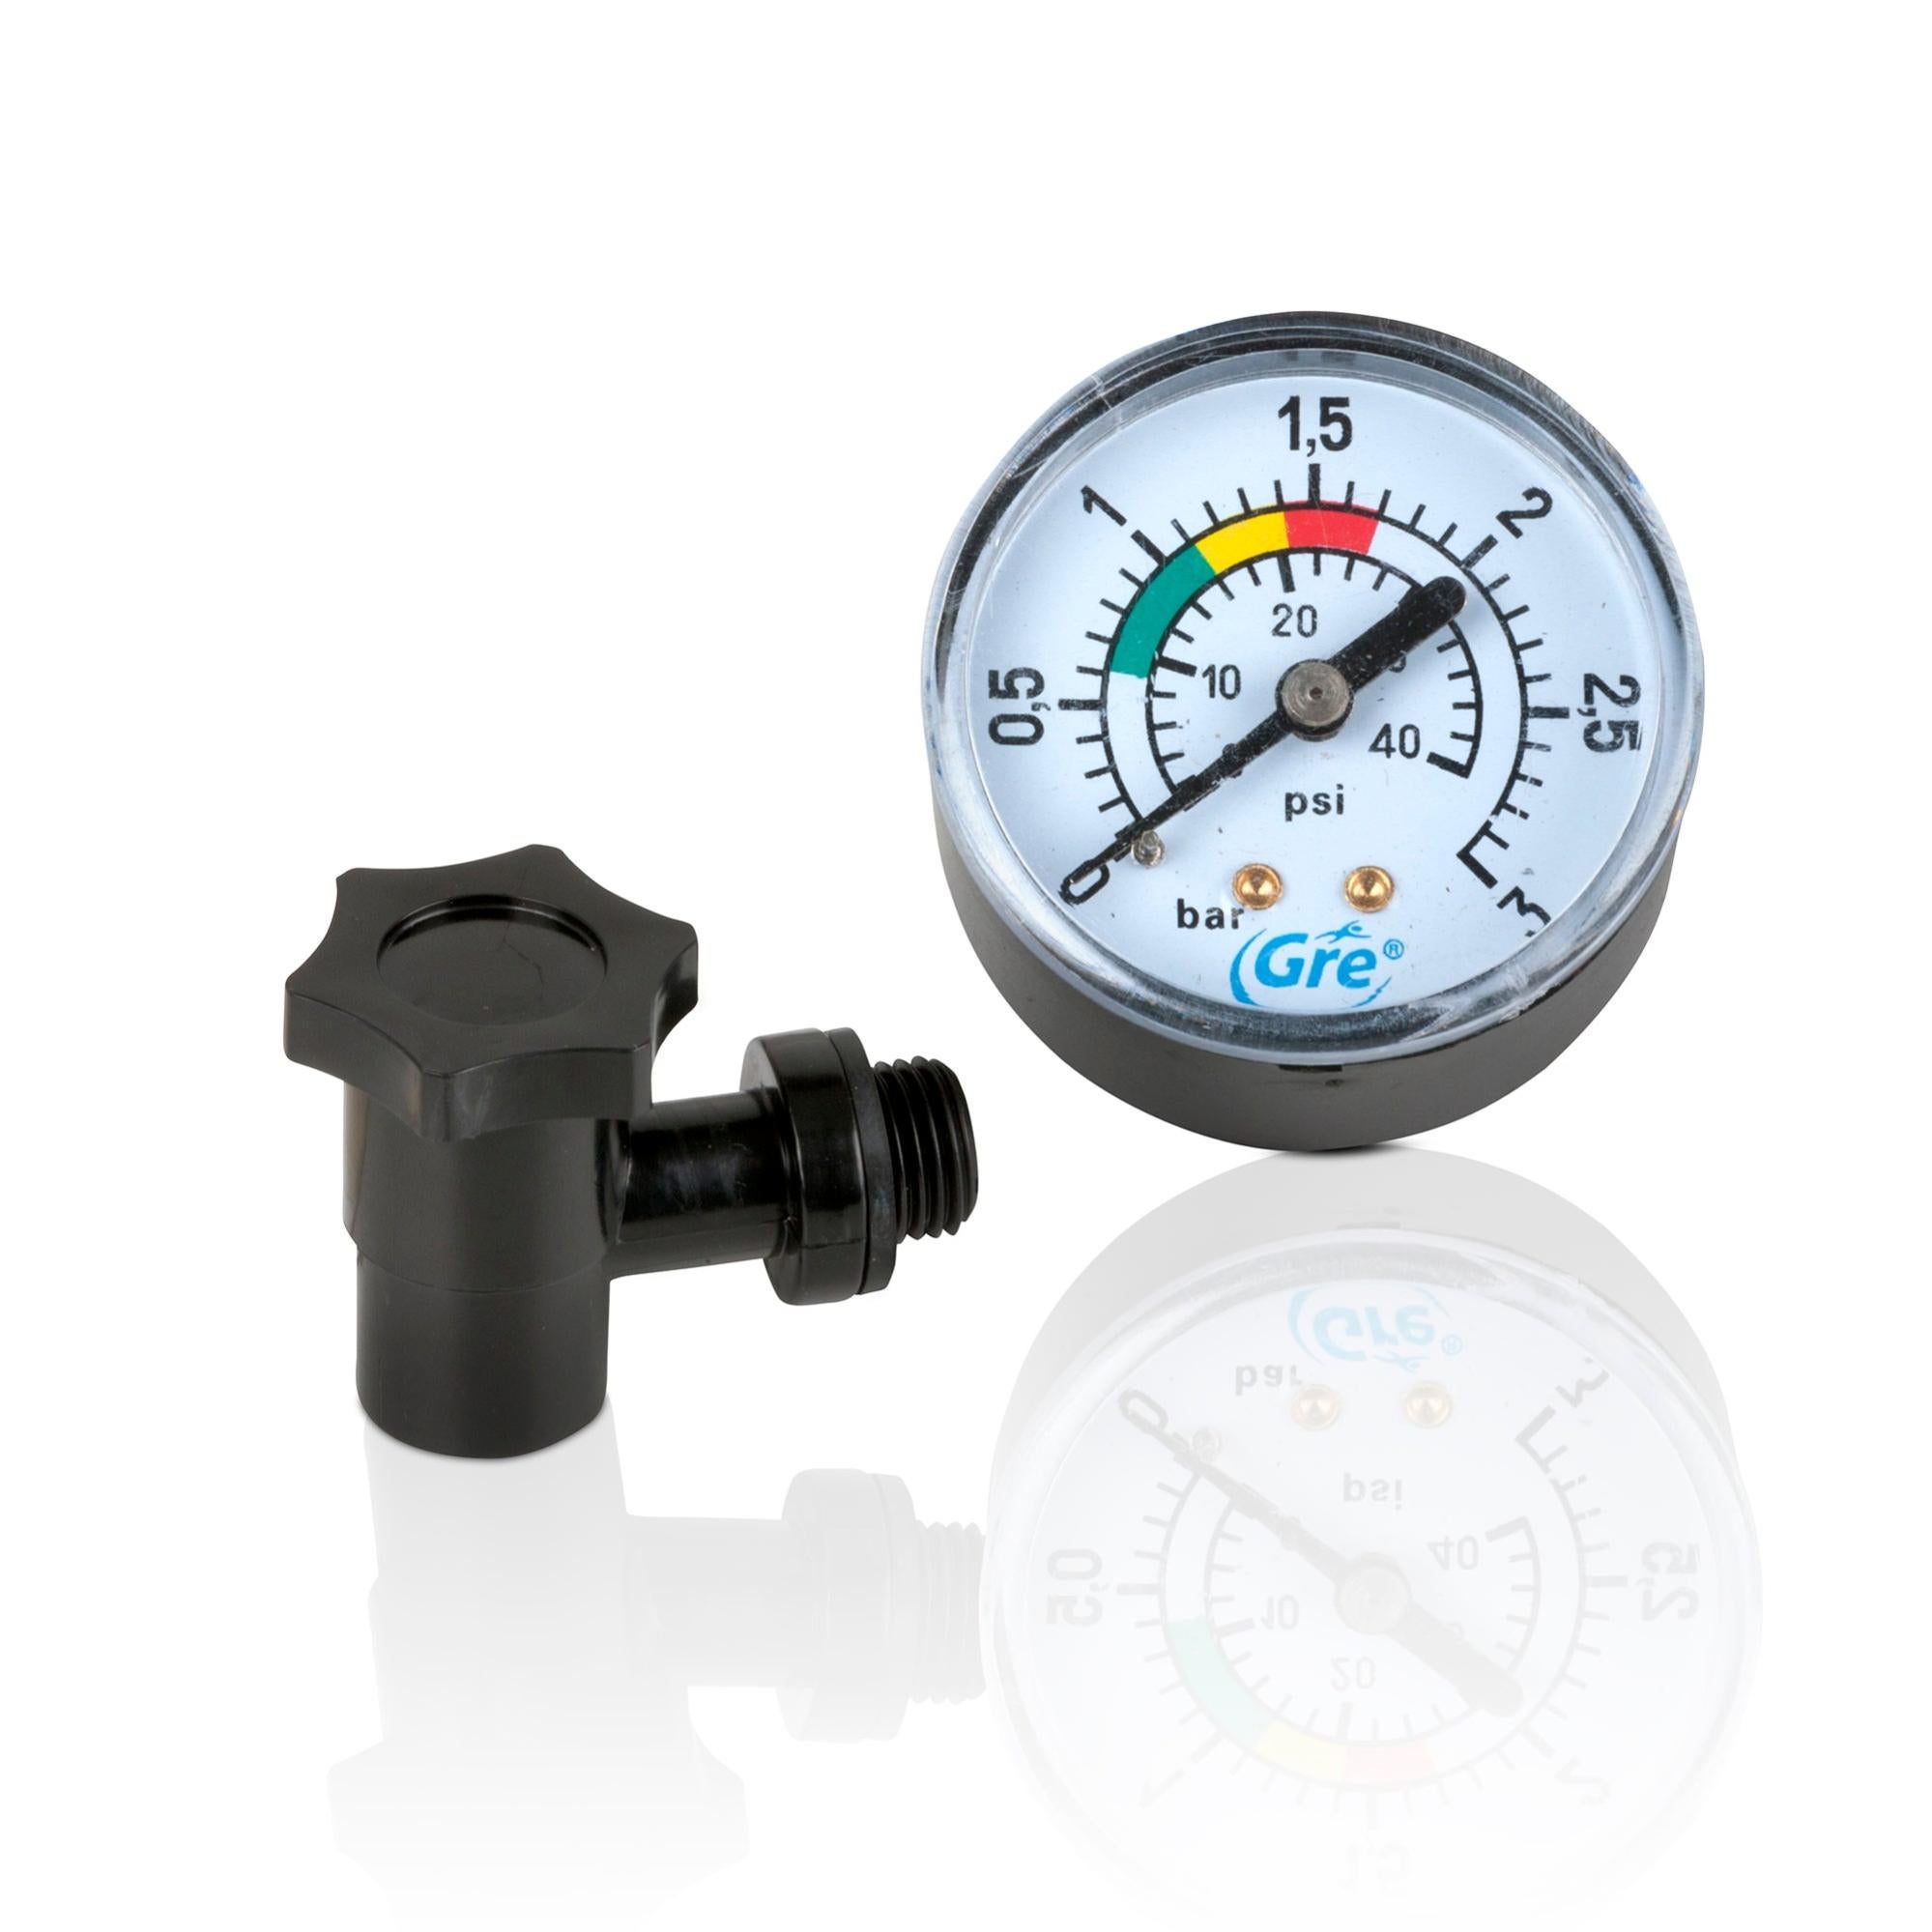 Manomètre de pression d'eau - Comment ça marche ?